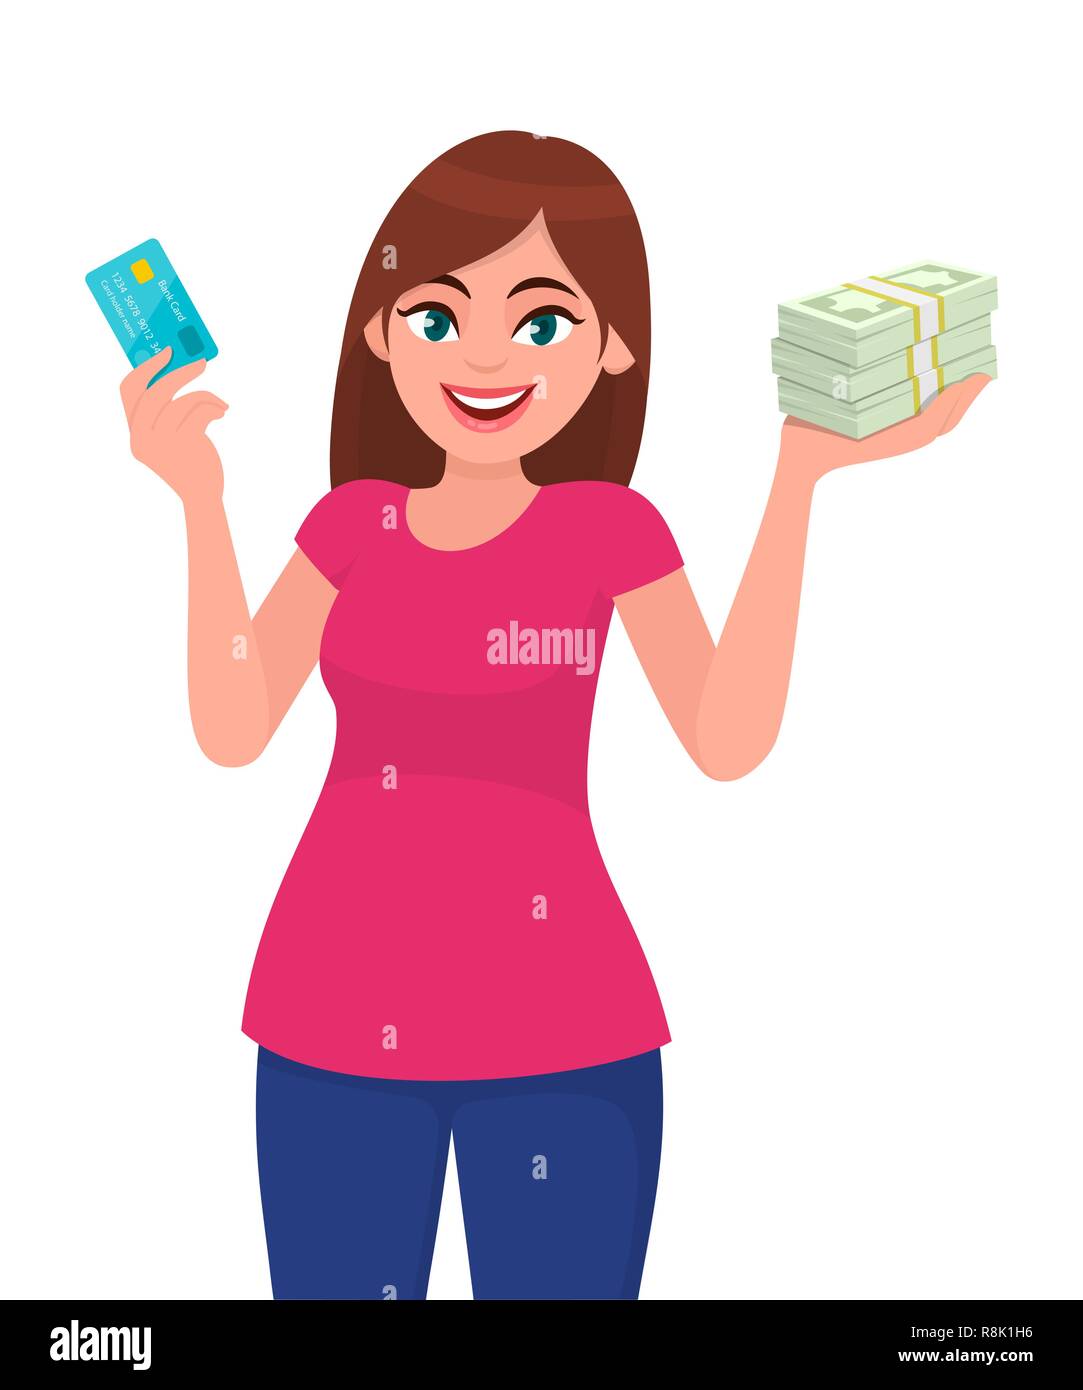 Attraktive, glückliche junge Frau, die eine Kredit-/Debitkarte hält oder zeigt, ein Bündel von Bargeld-/Geld-/Währungsscheinen in der Hand. Drahtlose, moderne Bankzahlung. Stock Vektor